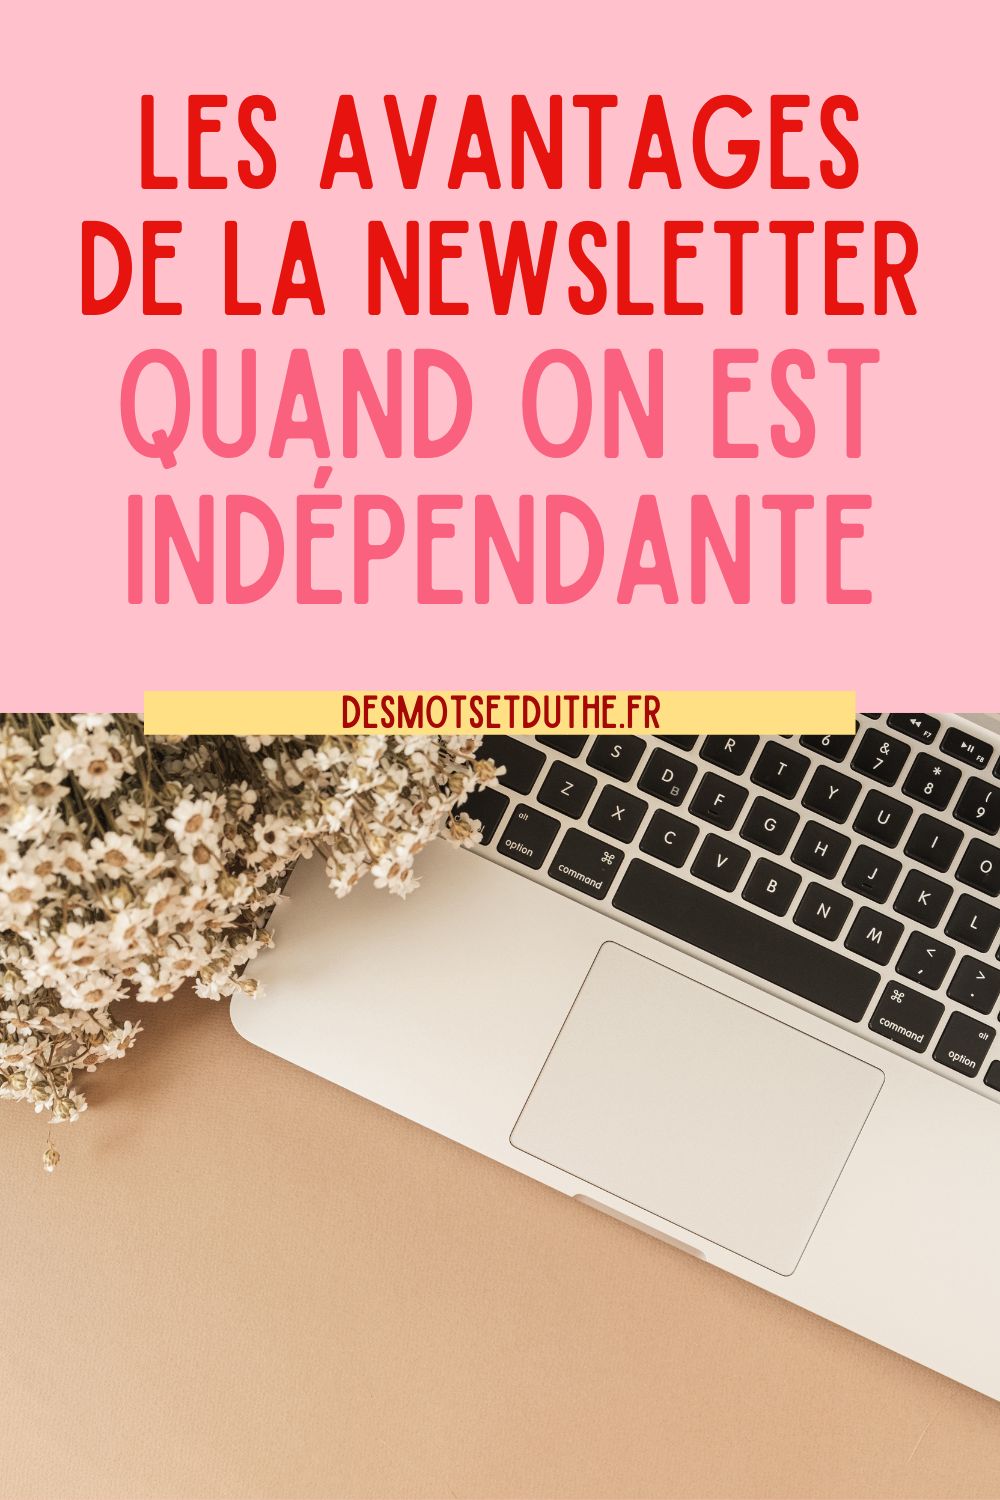 Les avantages de la newsletter quand on indépendante ou blogueuse